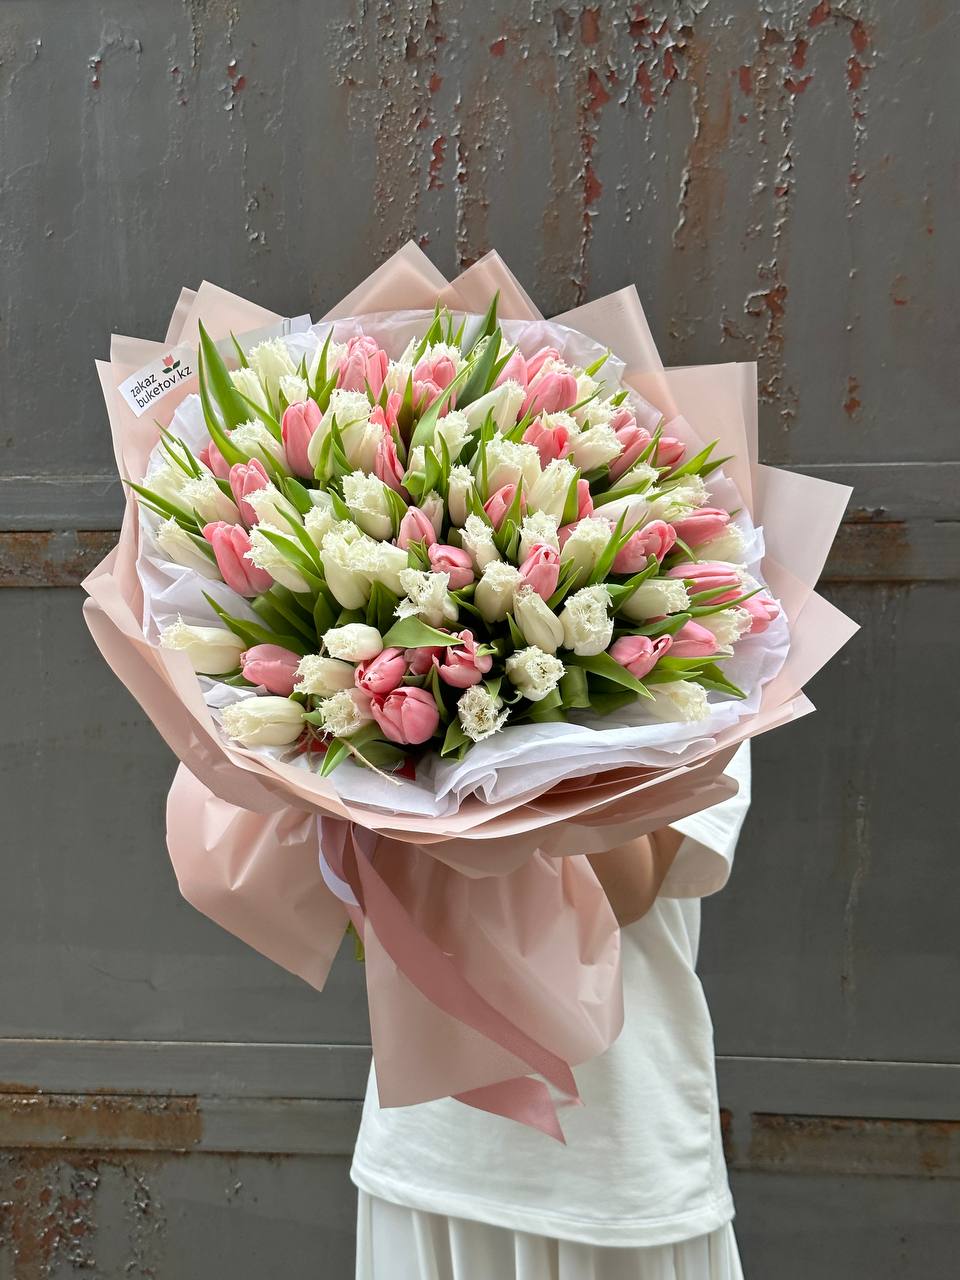 Букет "Роскошный букет" из 101 розового и белого тюльпана